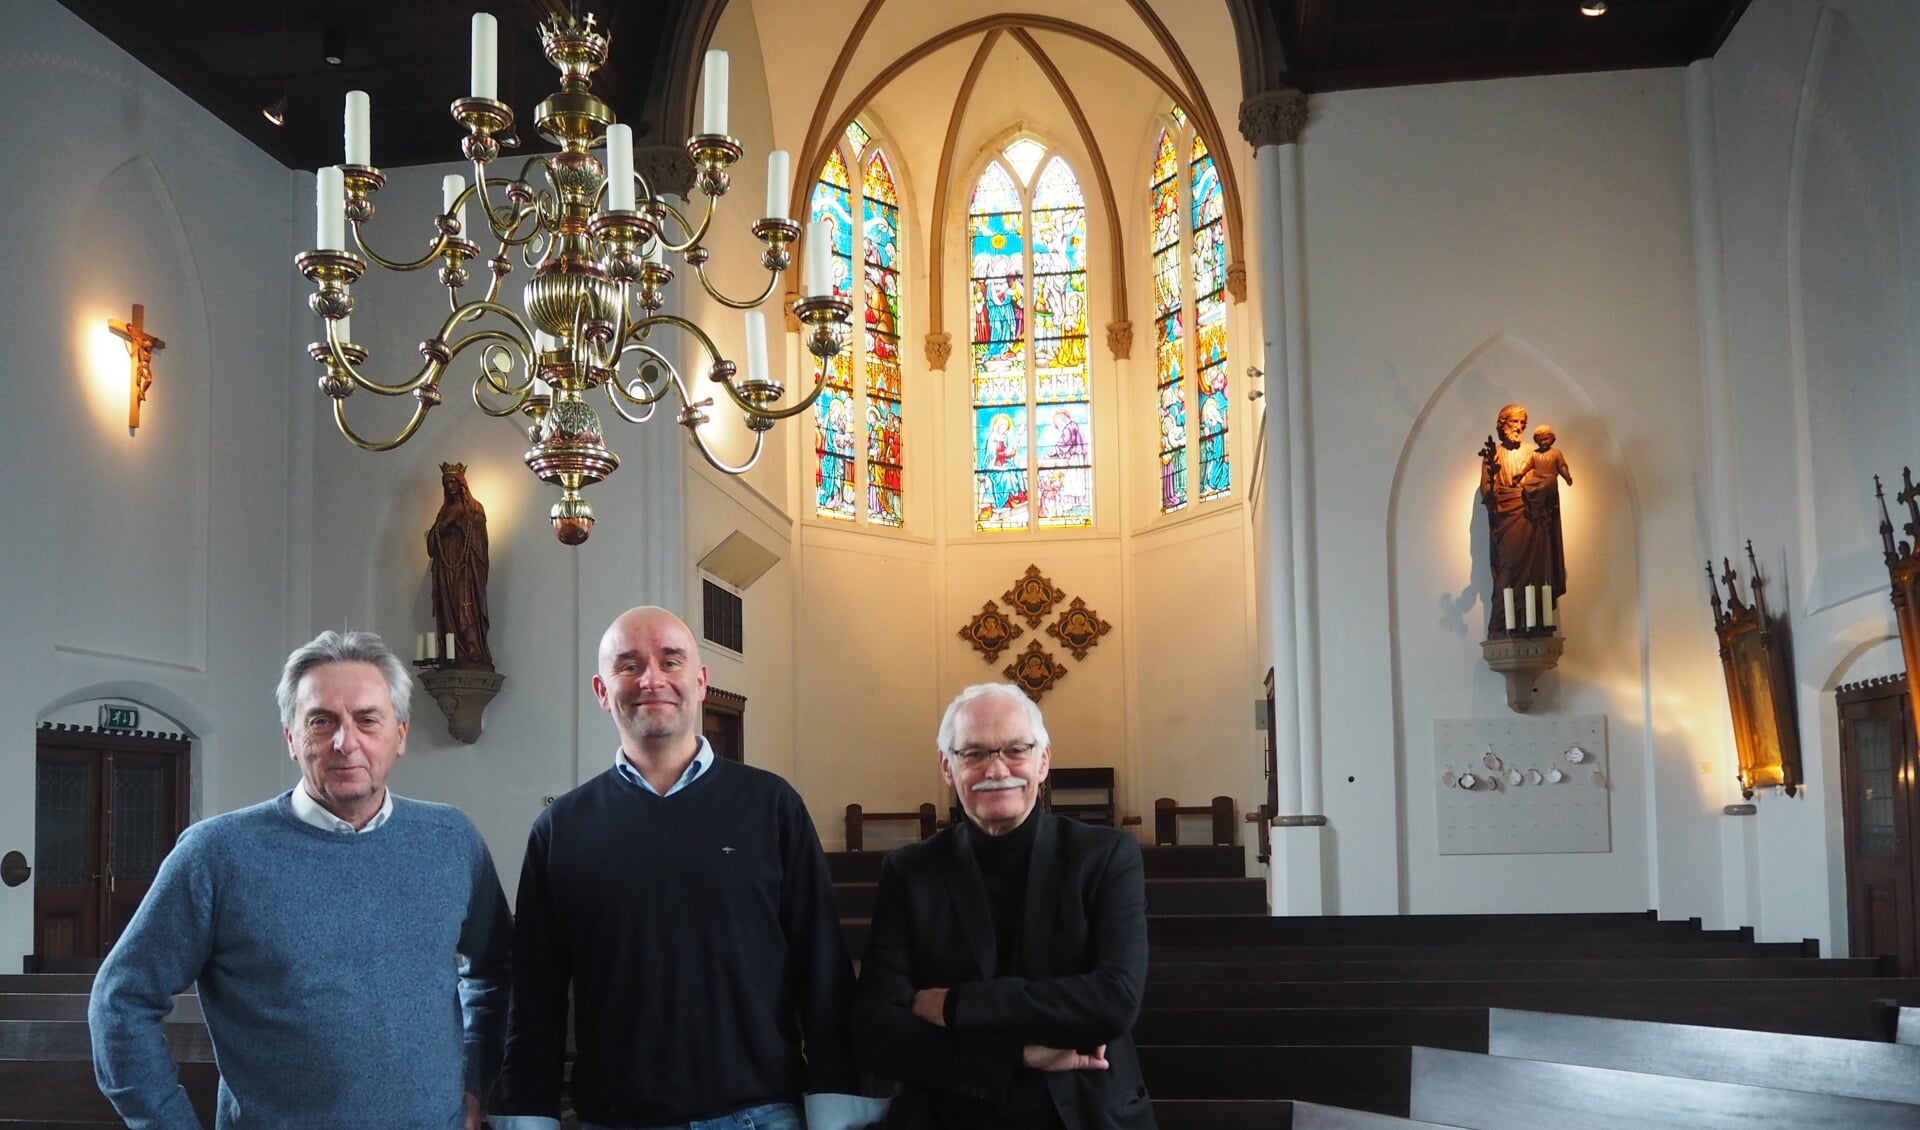 Albert Dragt, Coert van den Berg en Wim van Dijk (v.l.n.r.) op de locatie waar op 5 april de Johannes Passion uitgevoerd wordt.